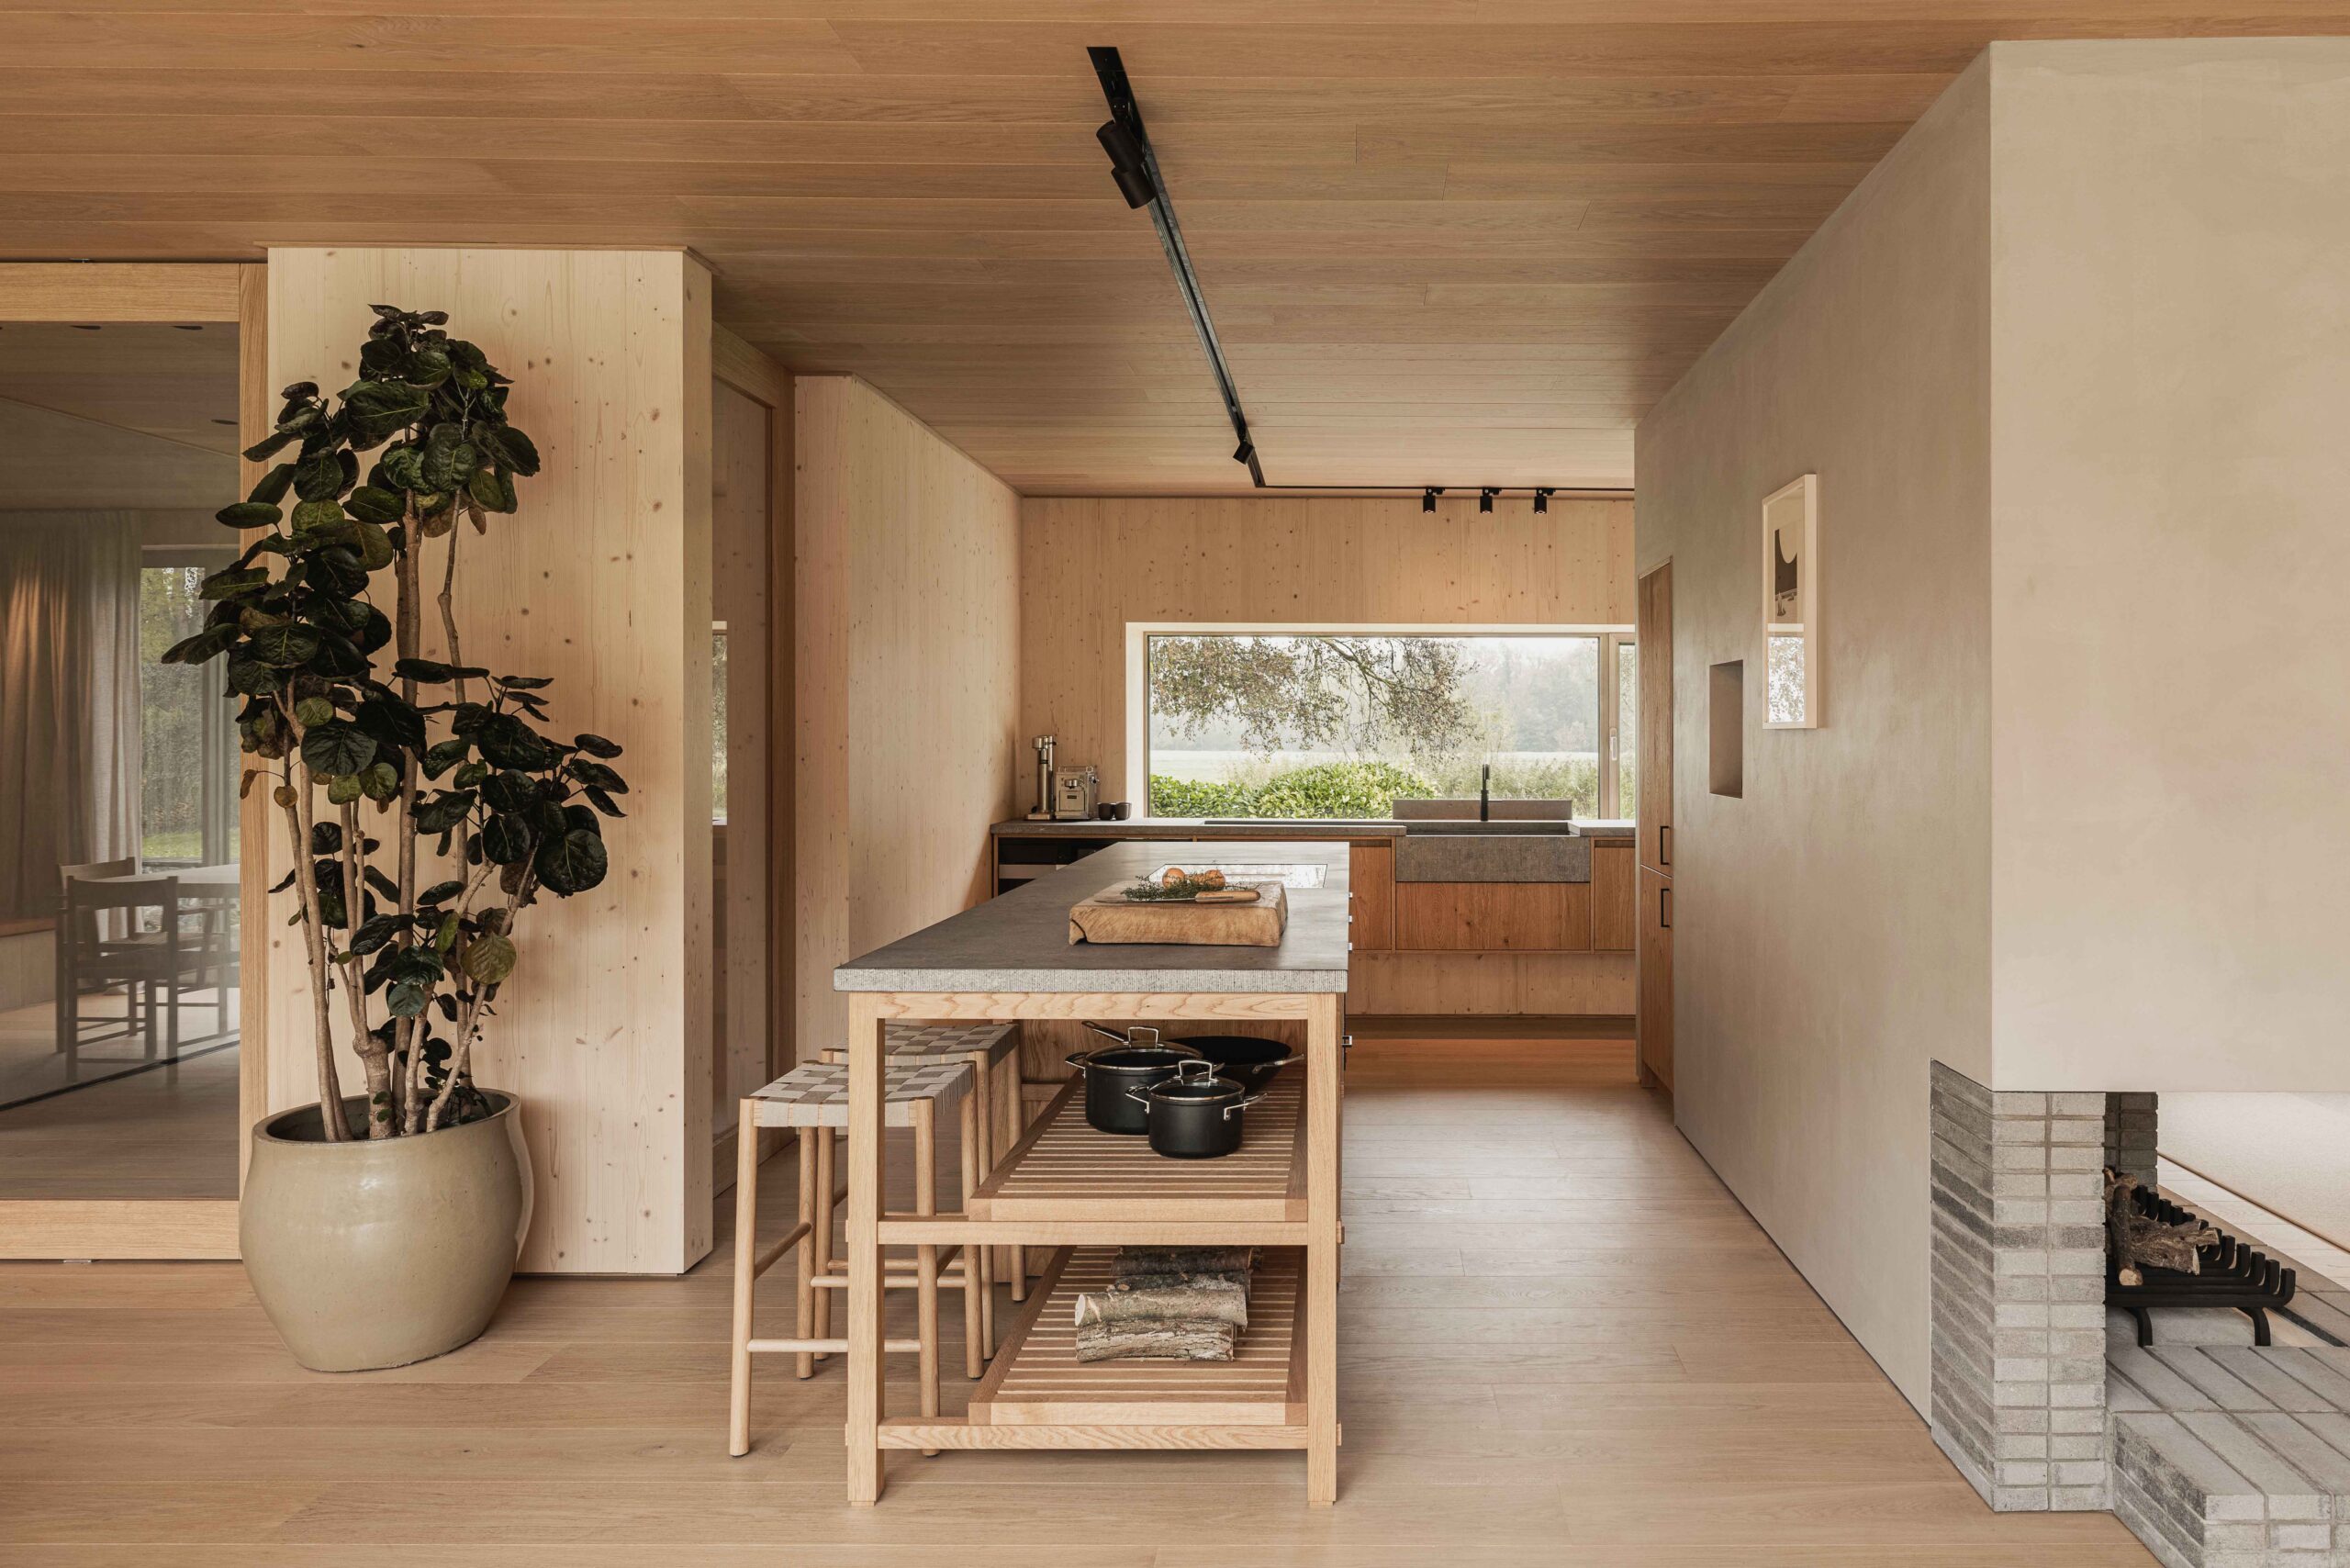 Binnenkant woning, houtkleurig plafond en vloer, rechts een open haard, links een grote plant en in het midden een tafel met bankje.